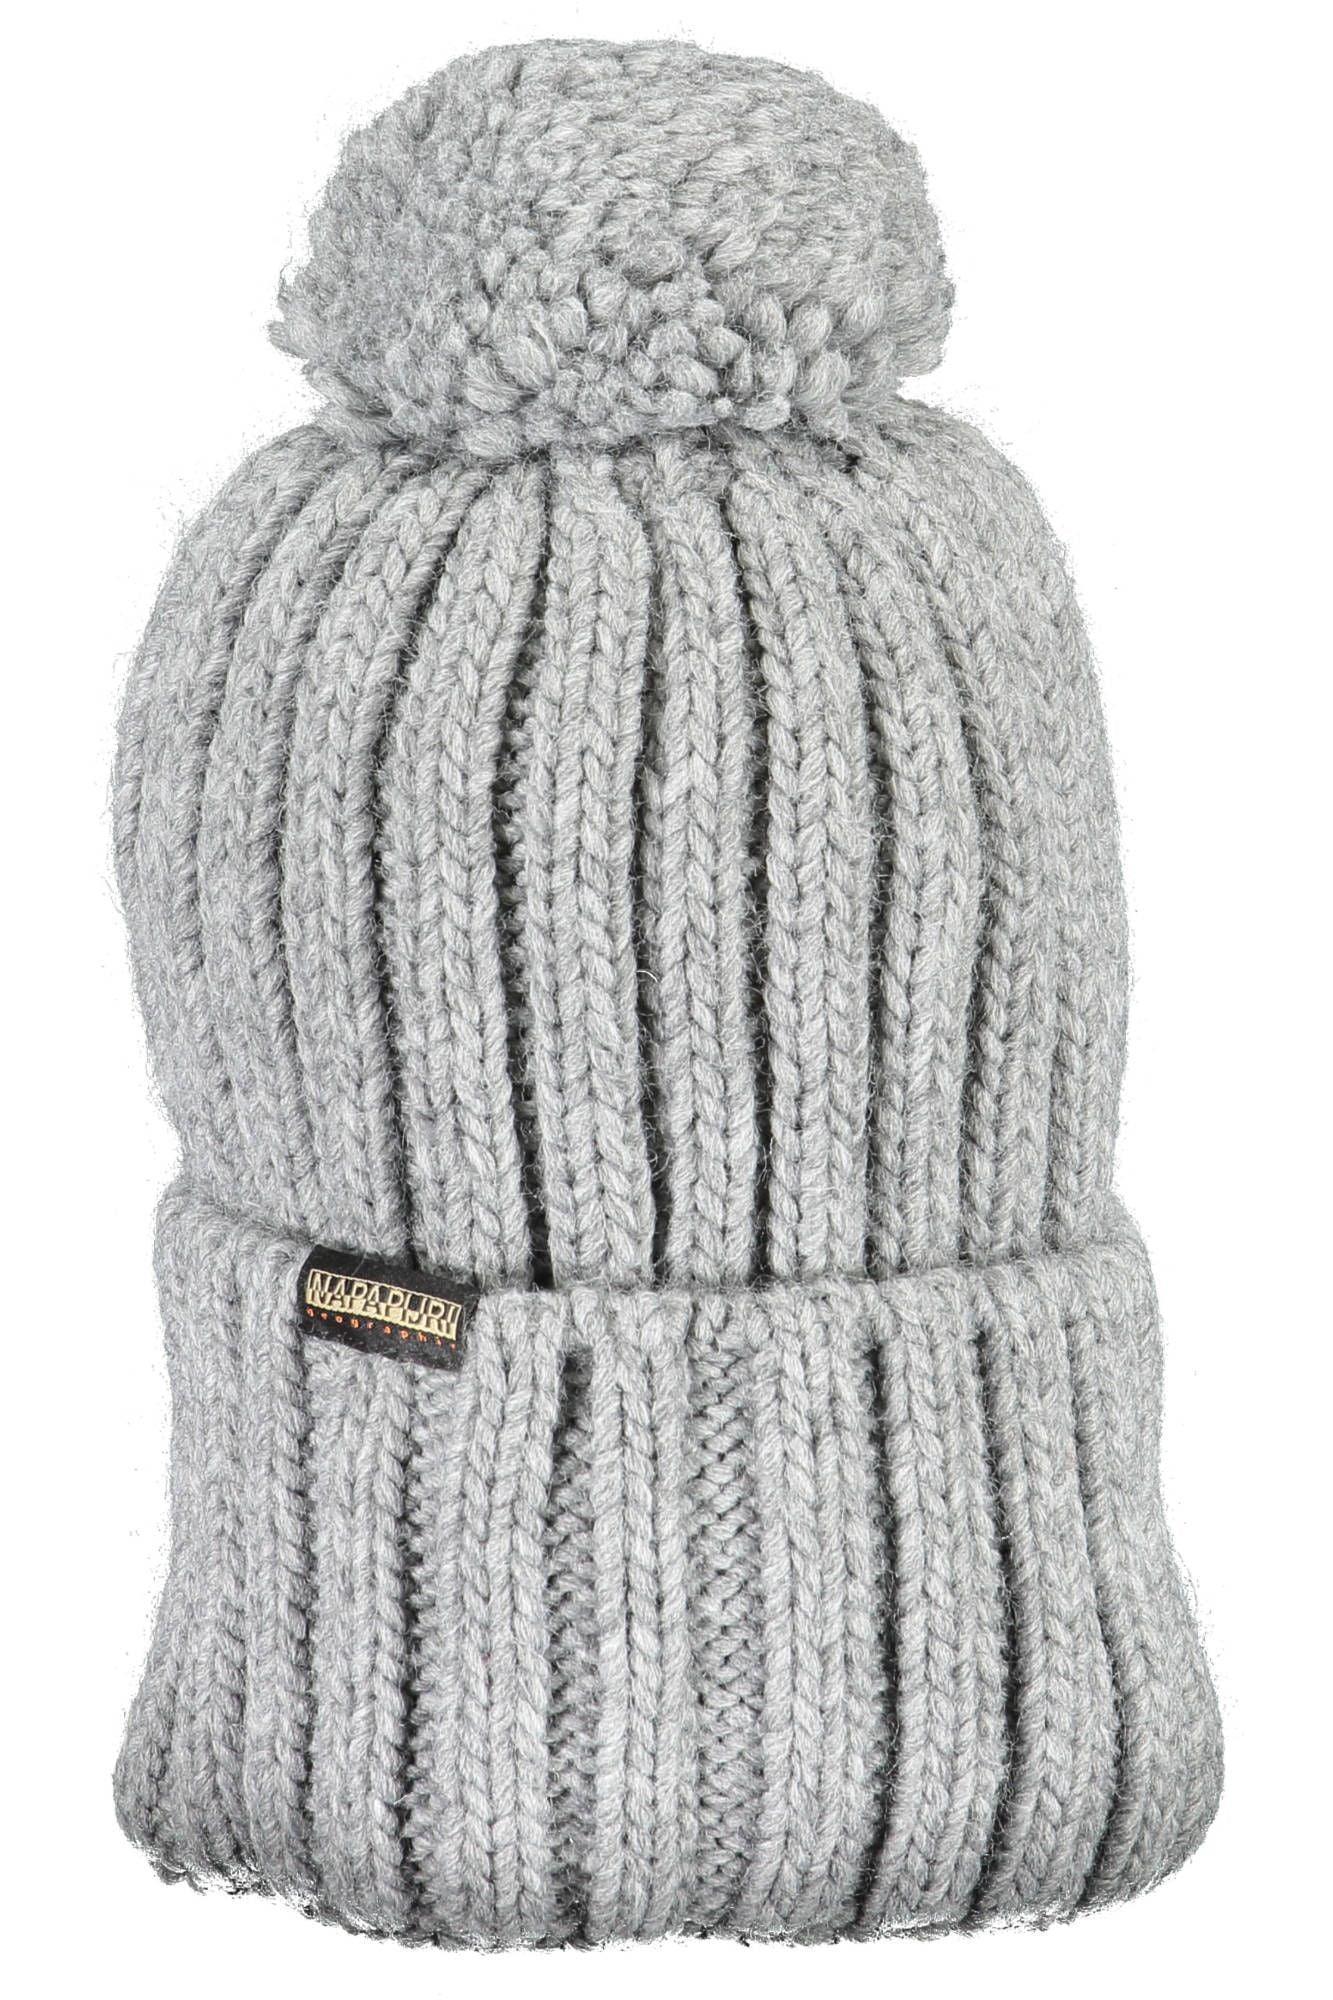 Napapijri Stylish Pompon-Accented Winter Hat - PER.FASHION